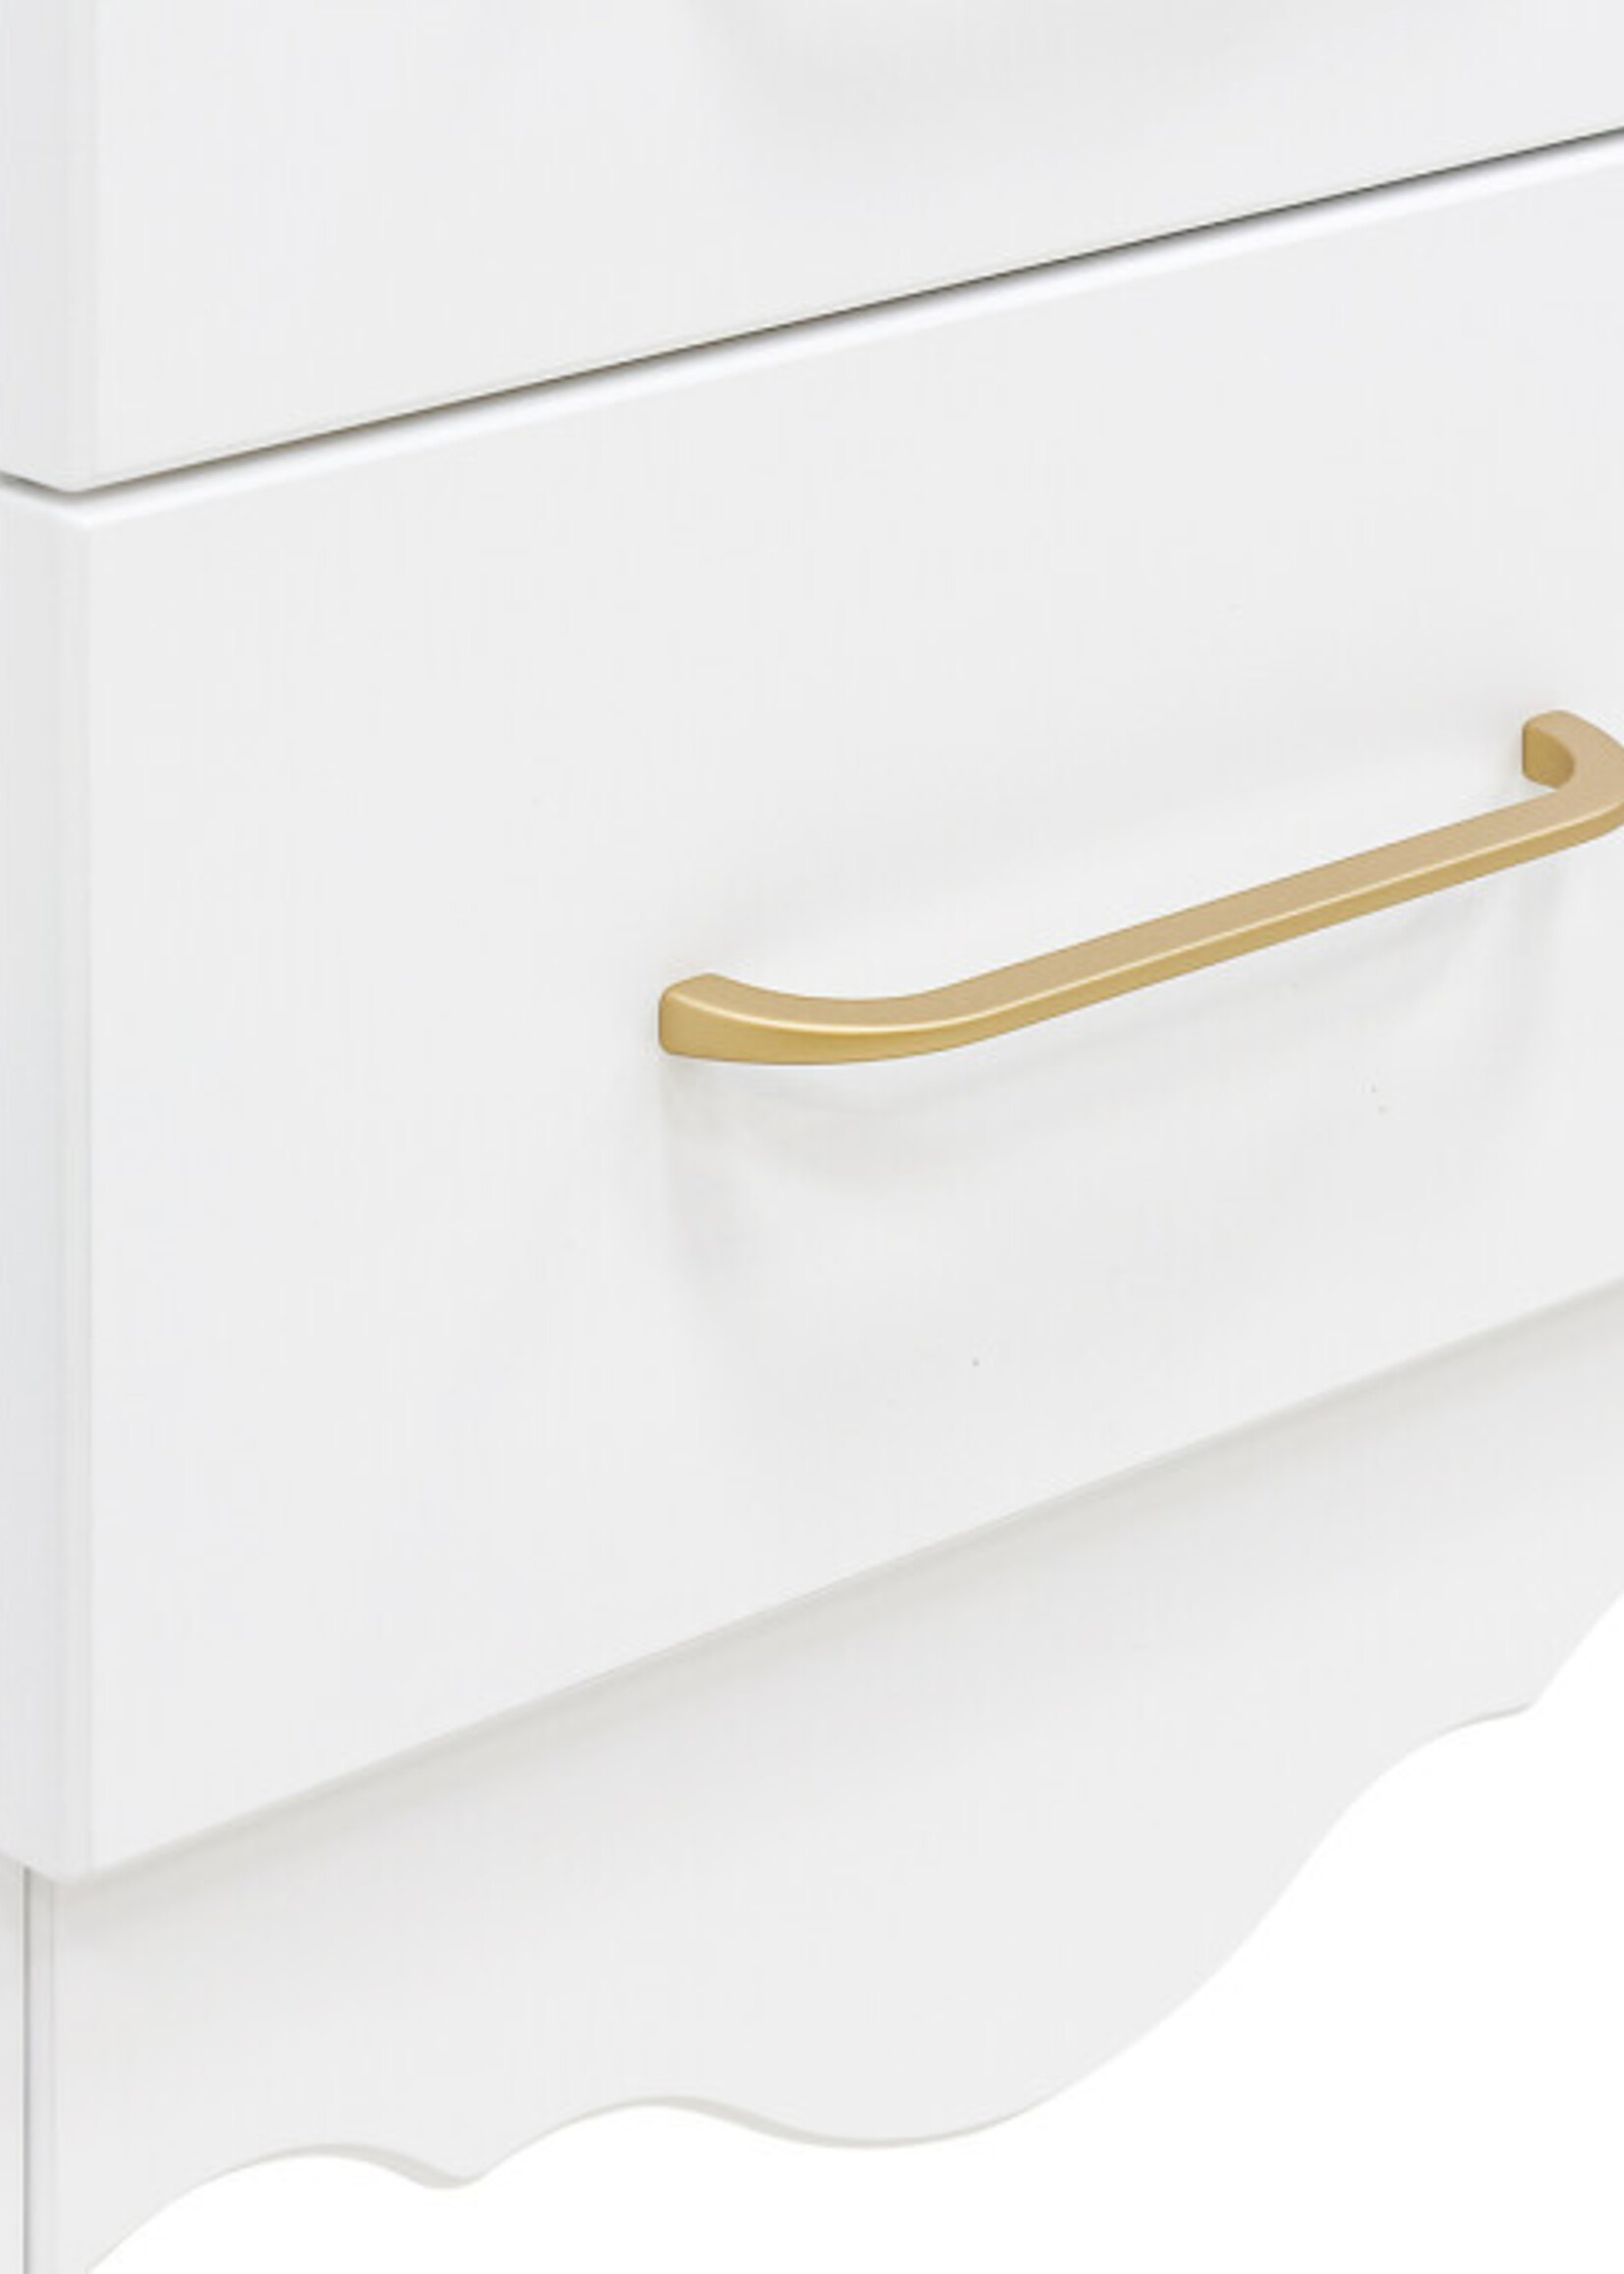 BOPITA Bed 60x120cm + Chest of drawers + Closet Elena white